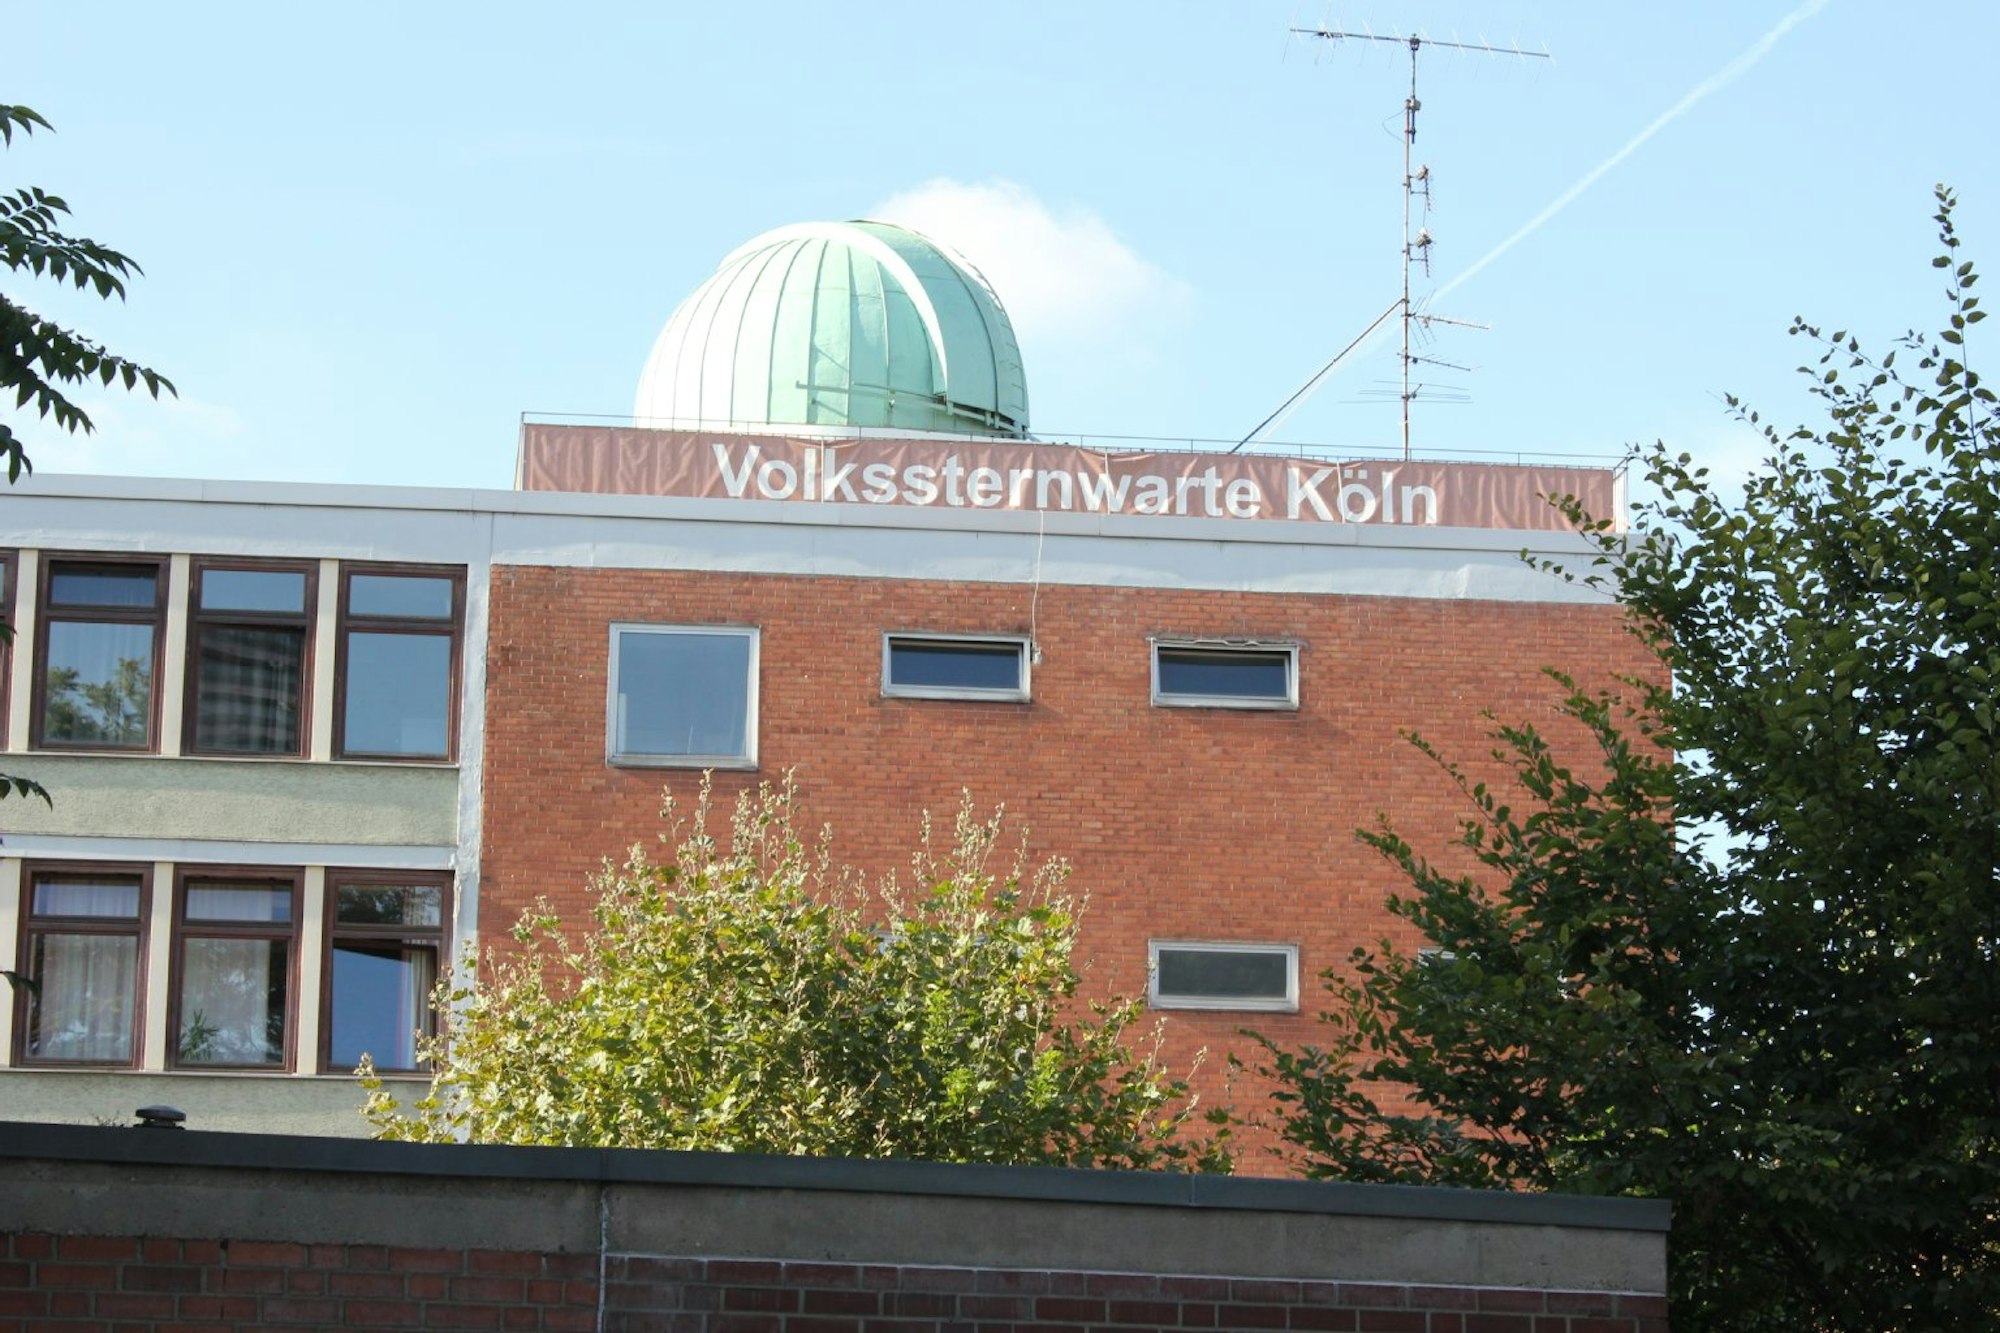 Auf dem Dach des Schiller-Gymnasiums betreibt die Vereinigung der Sternfreunde Köln die Volkssternwarte. 